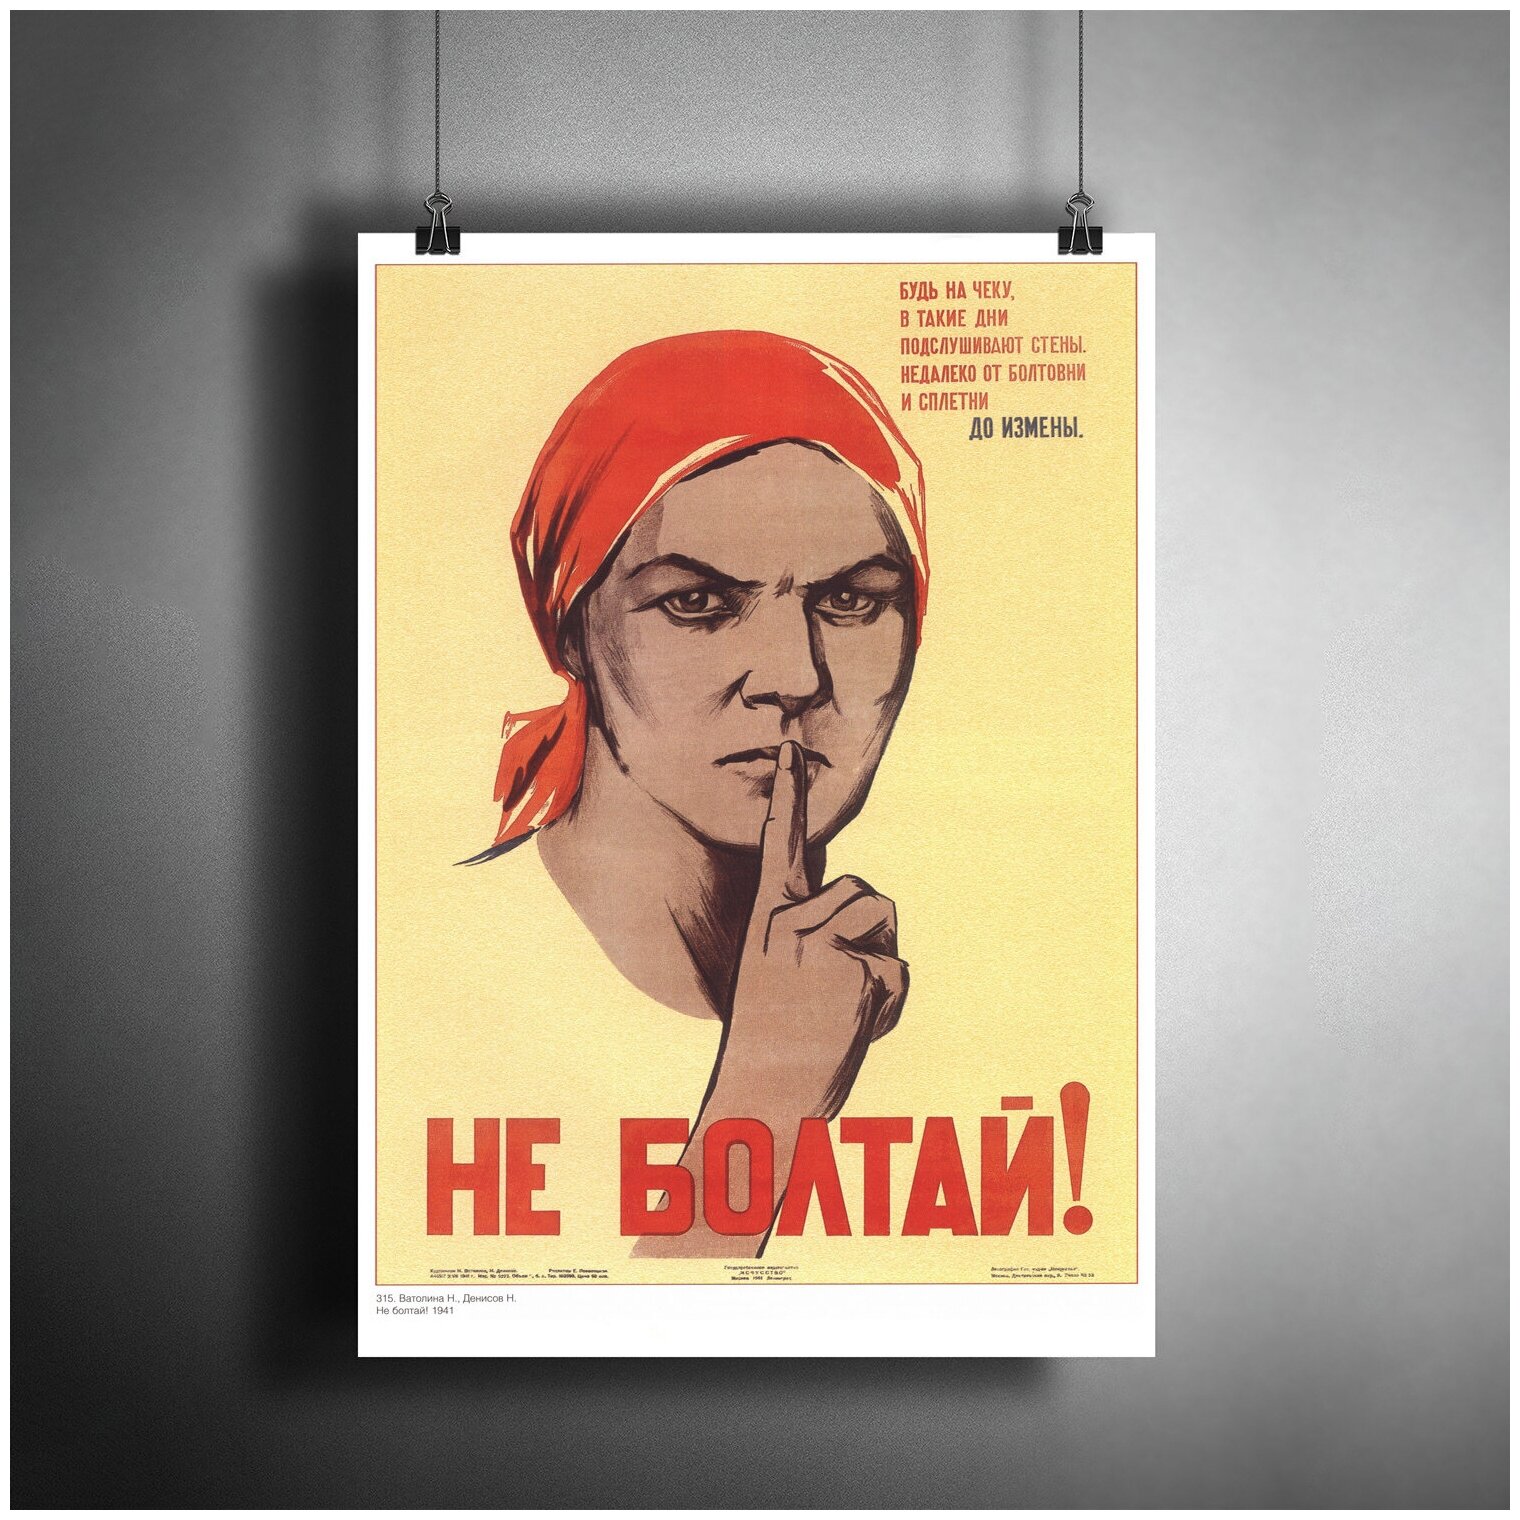 Постер плакат для интерьера "Советский плакат "Не болтай!", художники Ватолина Н, Денисов Н, 1941 г."/ Декор дома, офиса, комнаты A3 (297 x 420 мм)